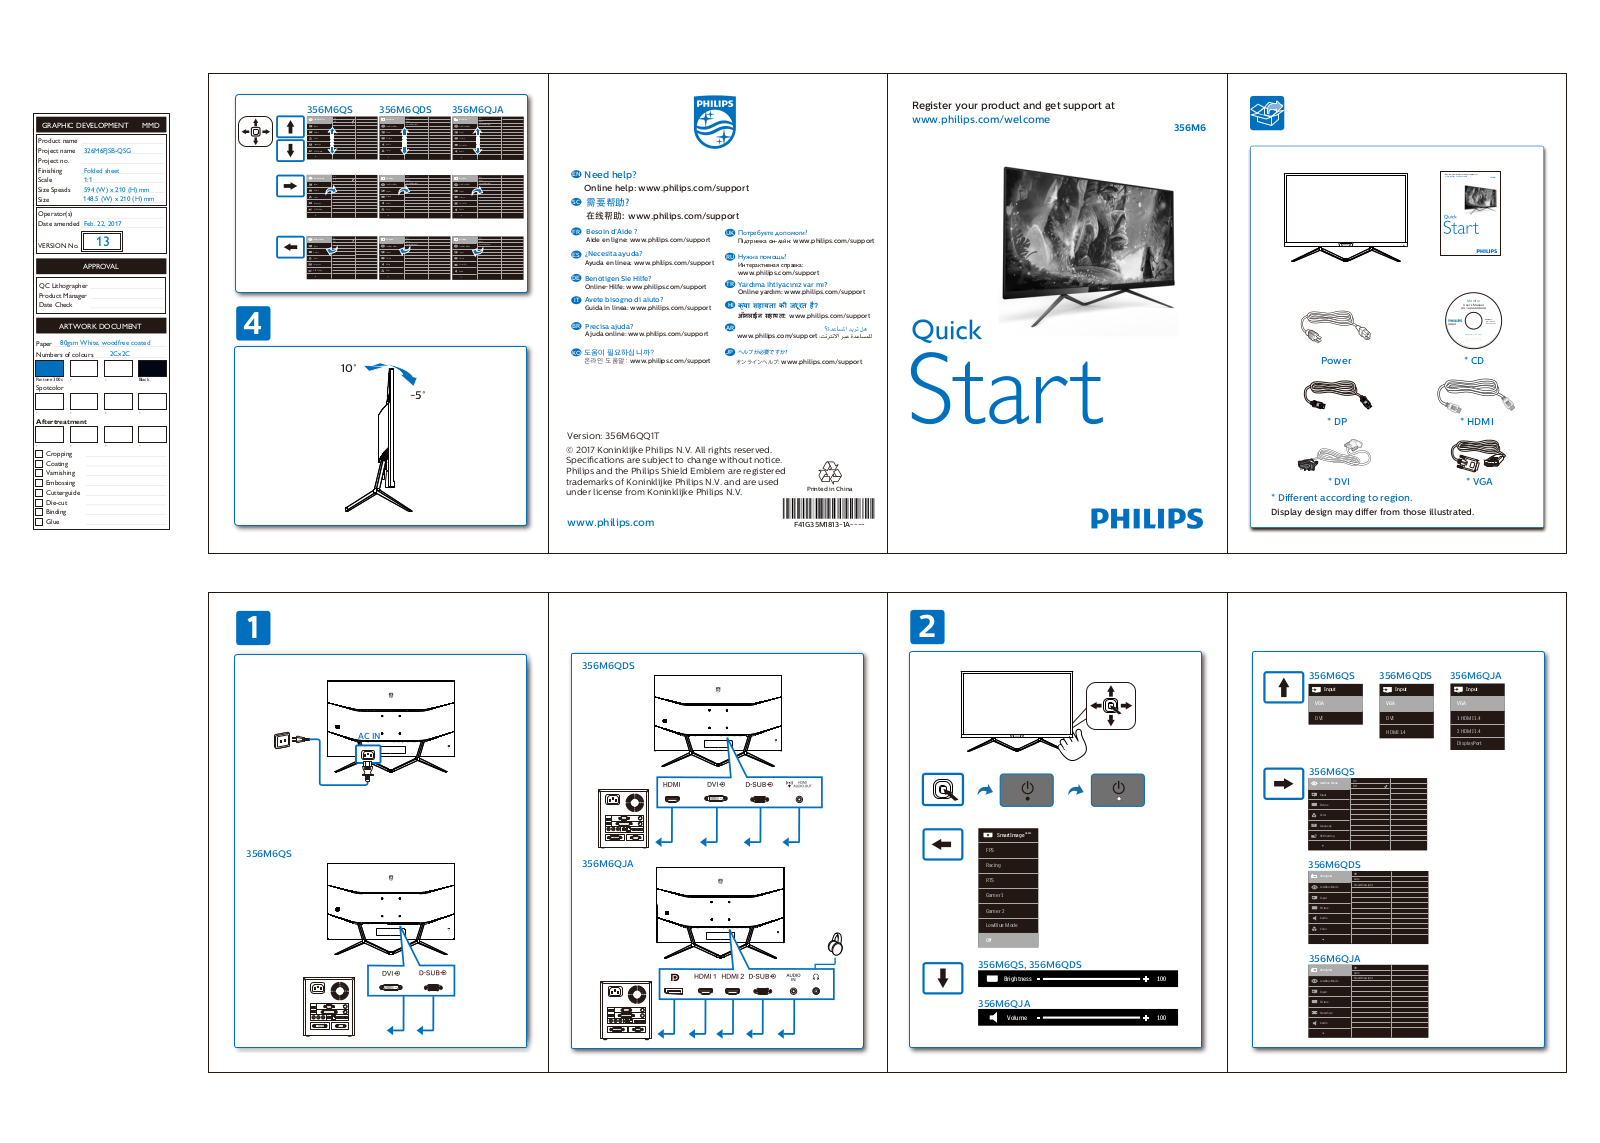 Philips 356M6QJAB, 356M6QDSB, 356M6, 326M6FJSB User Manual